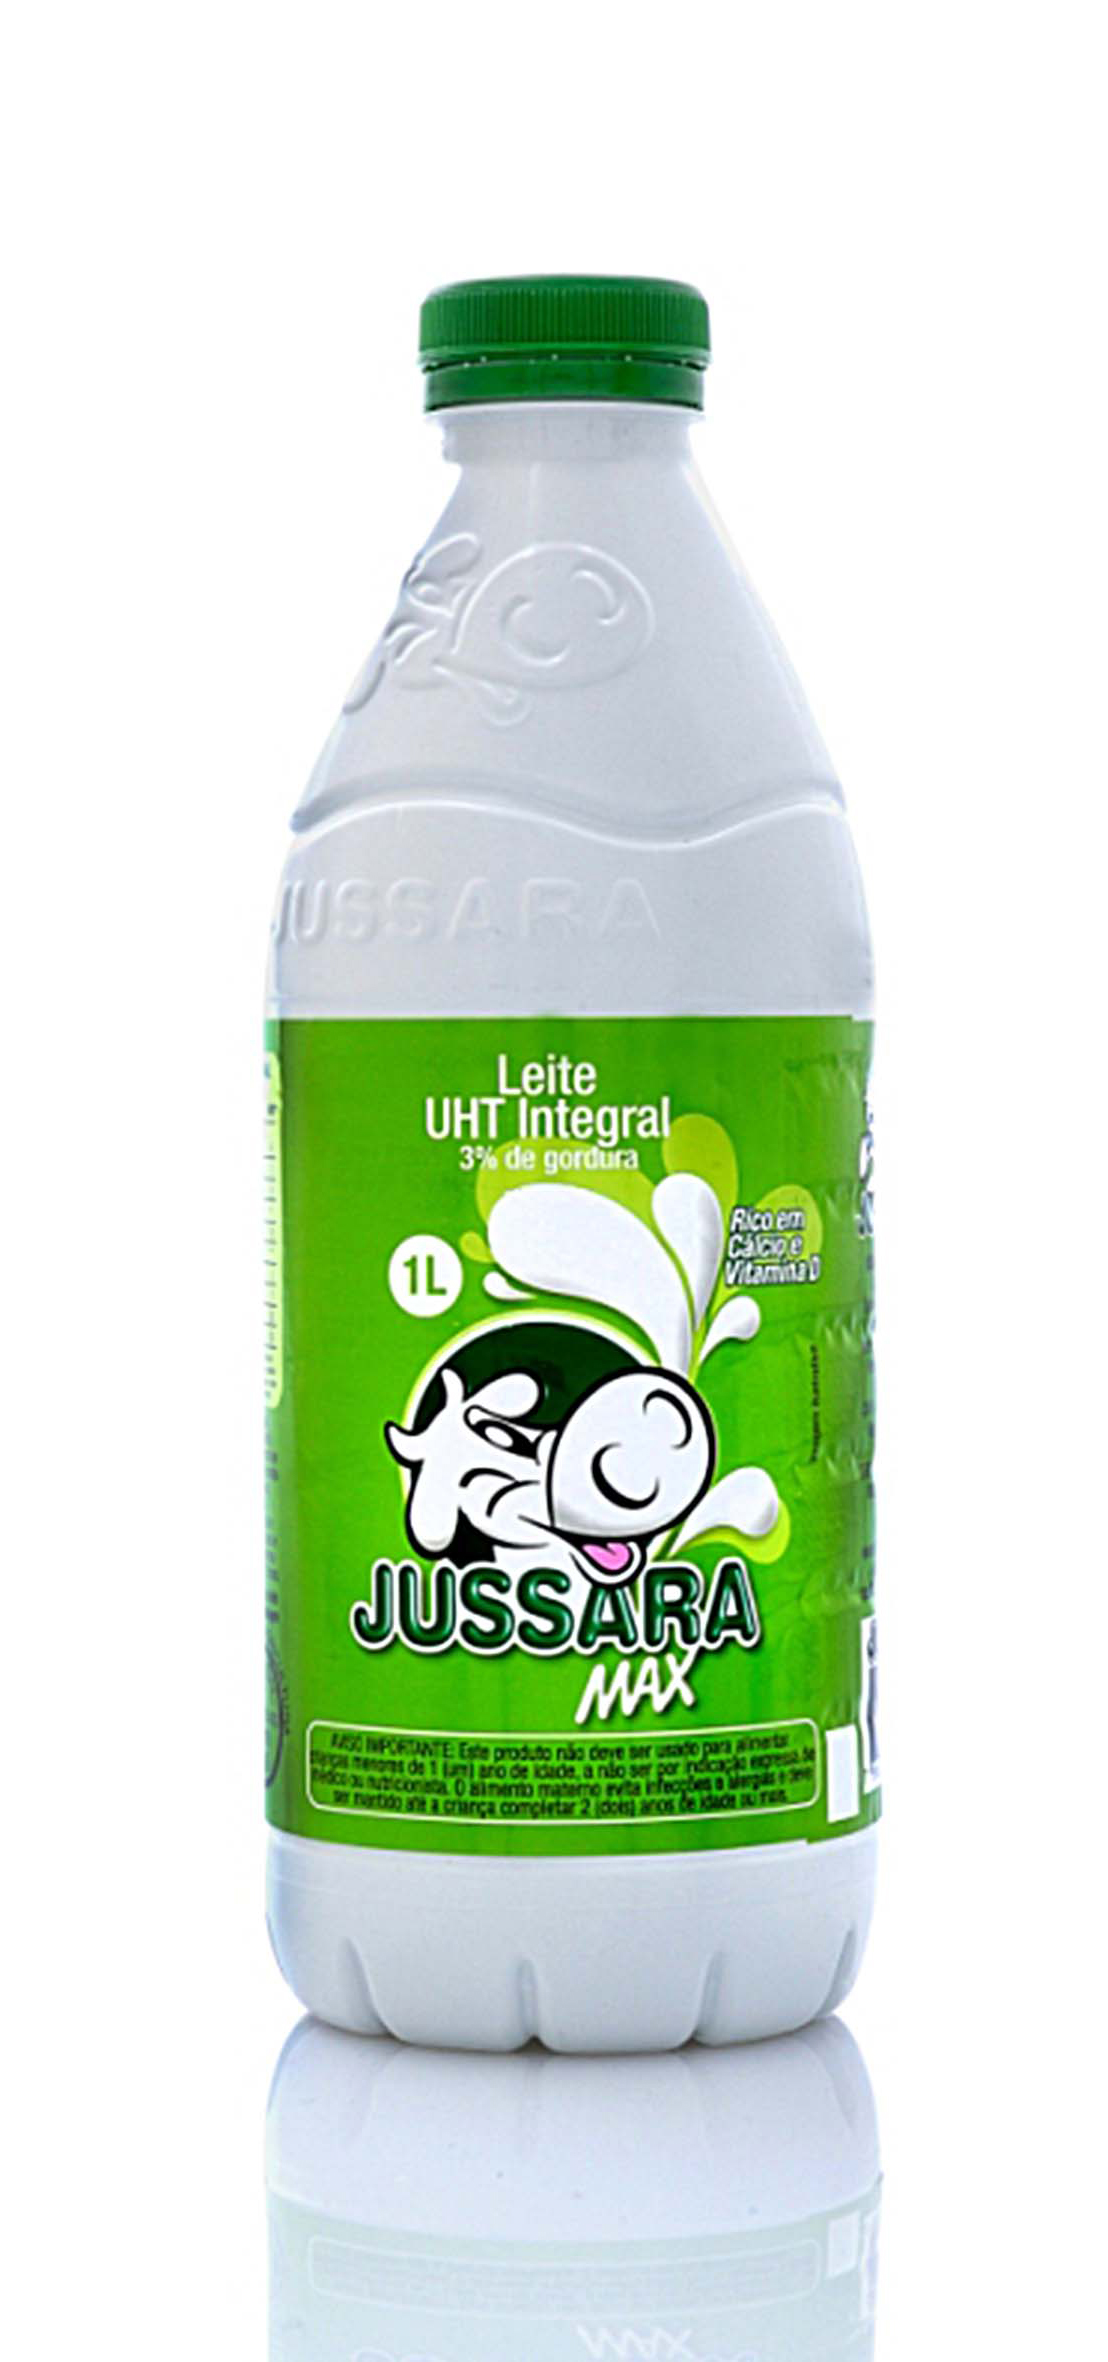 Jussara milk bottle